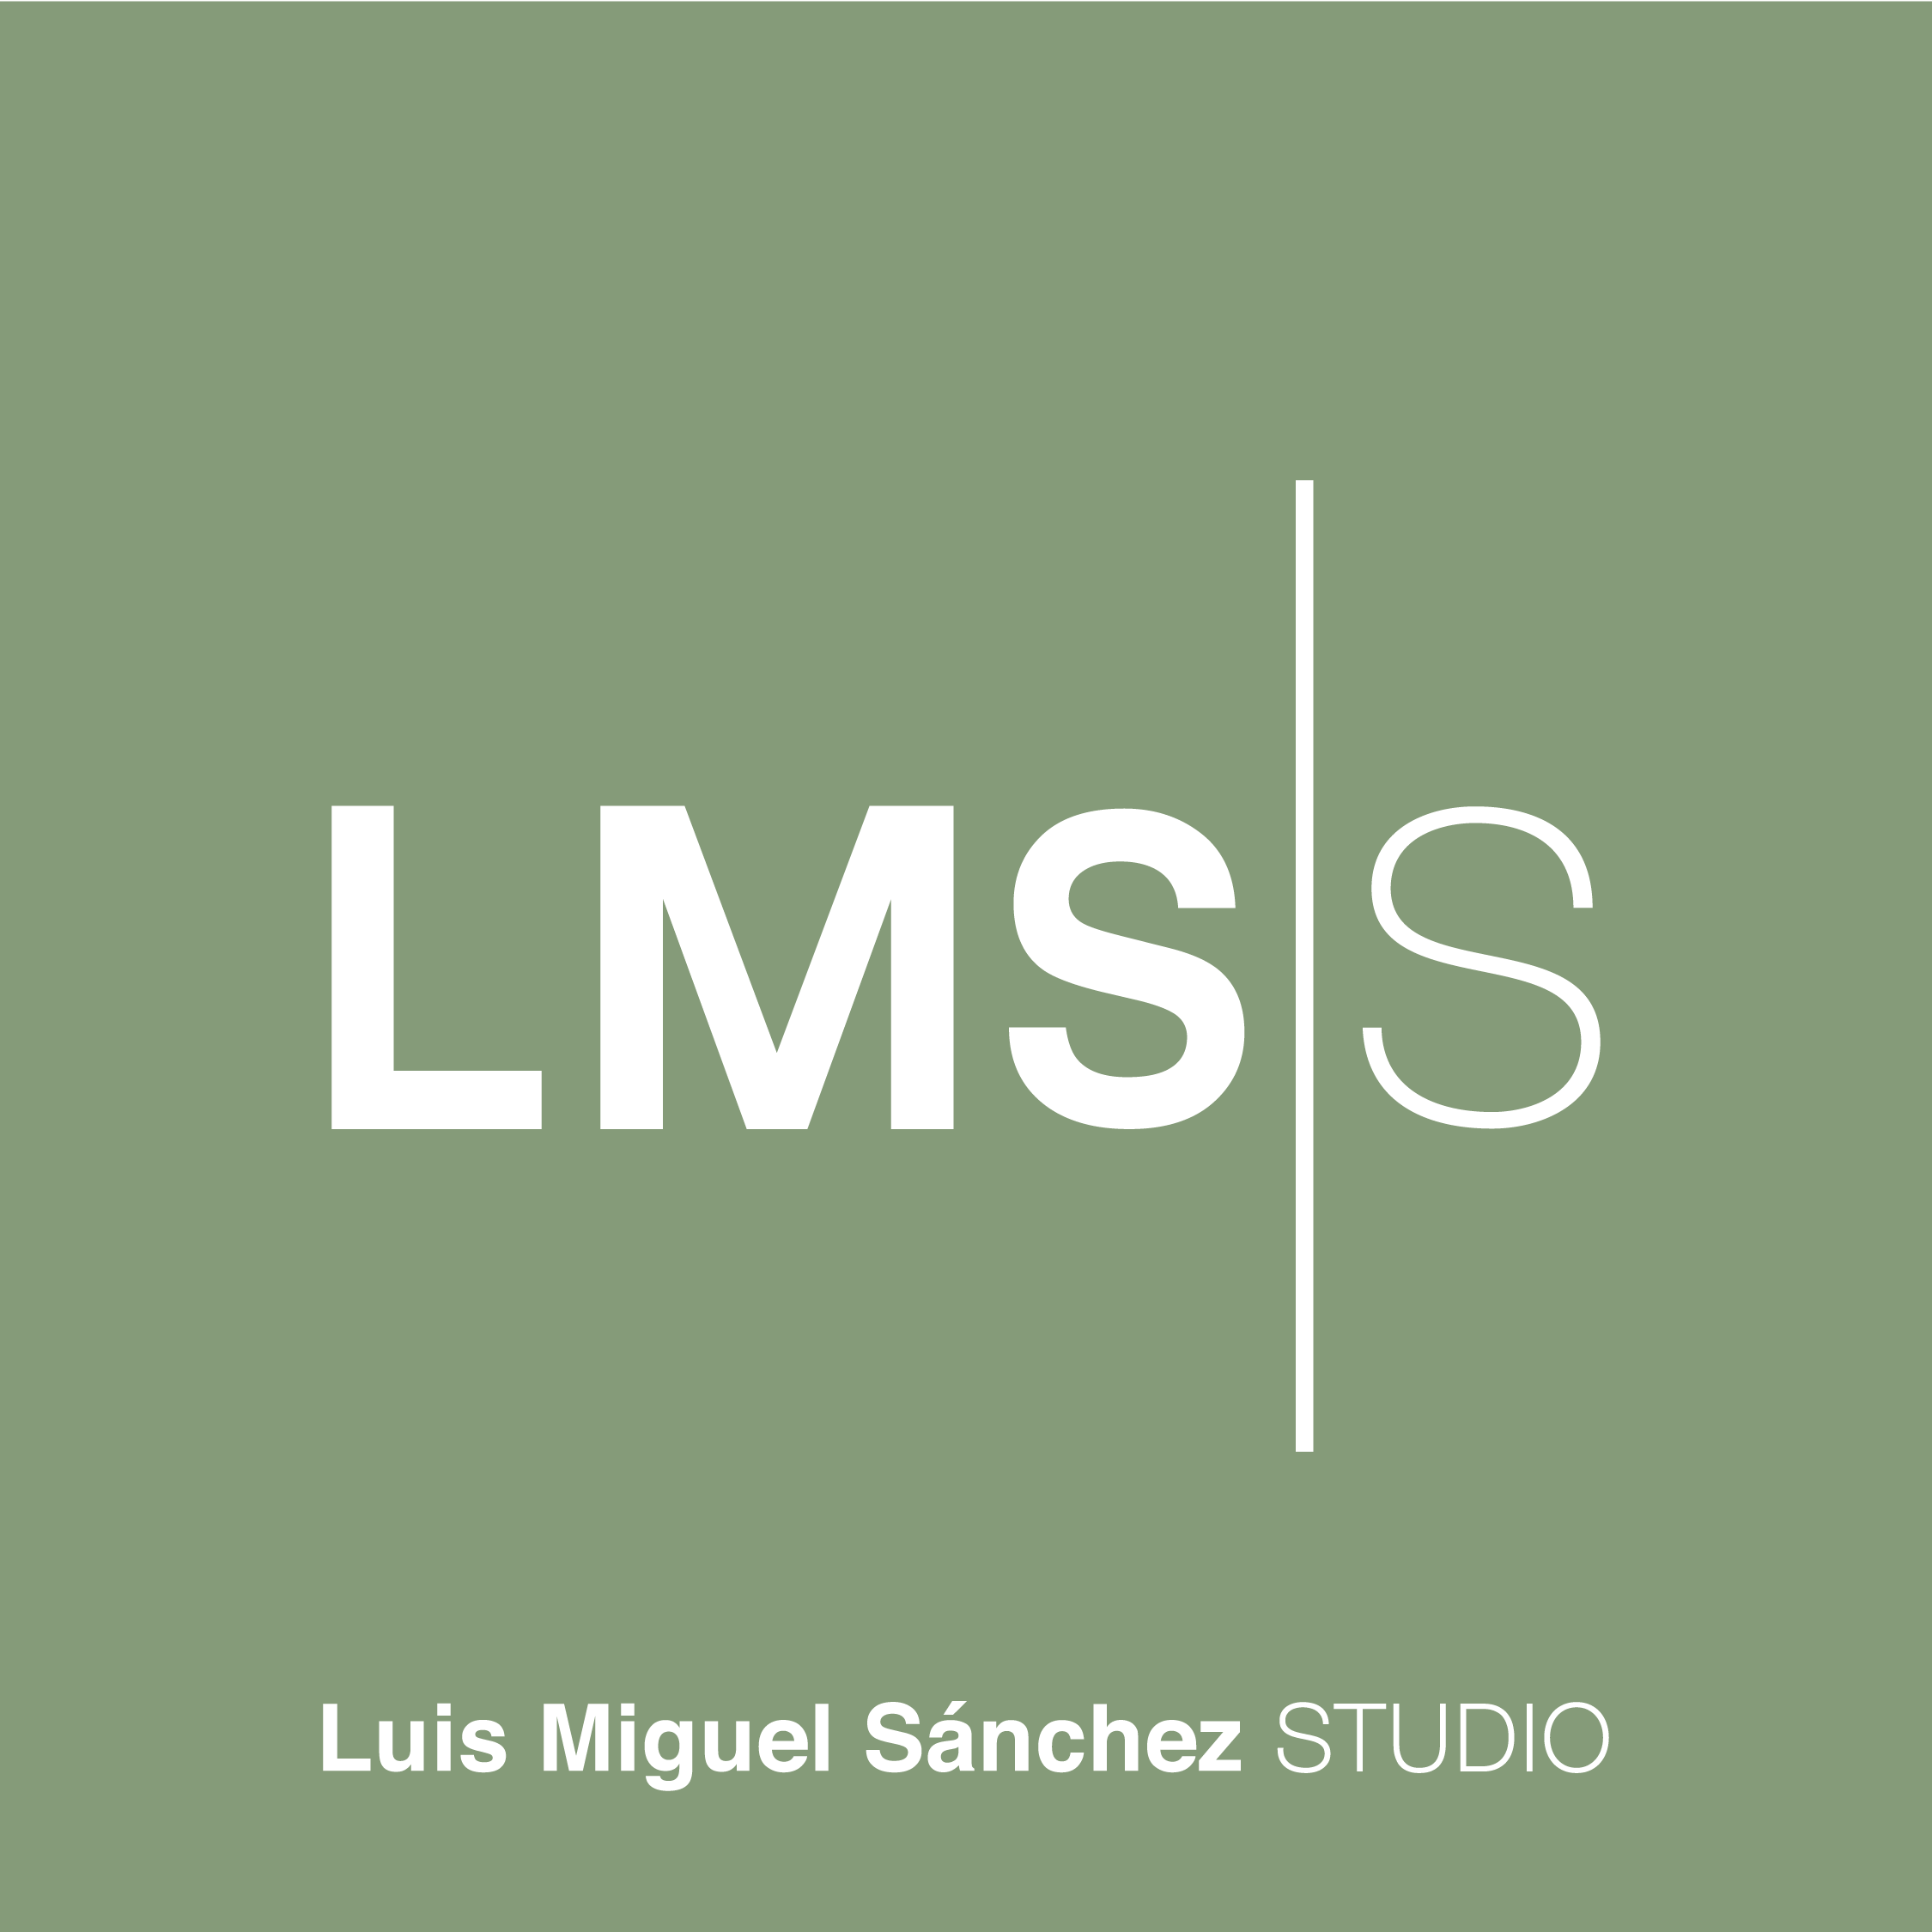 Luis Miguel Sanchez STUDIO